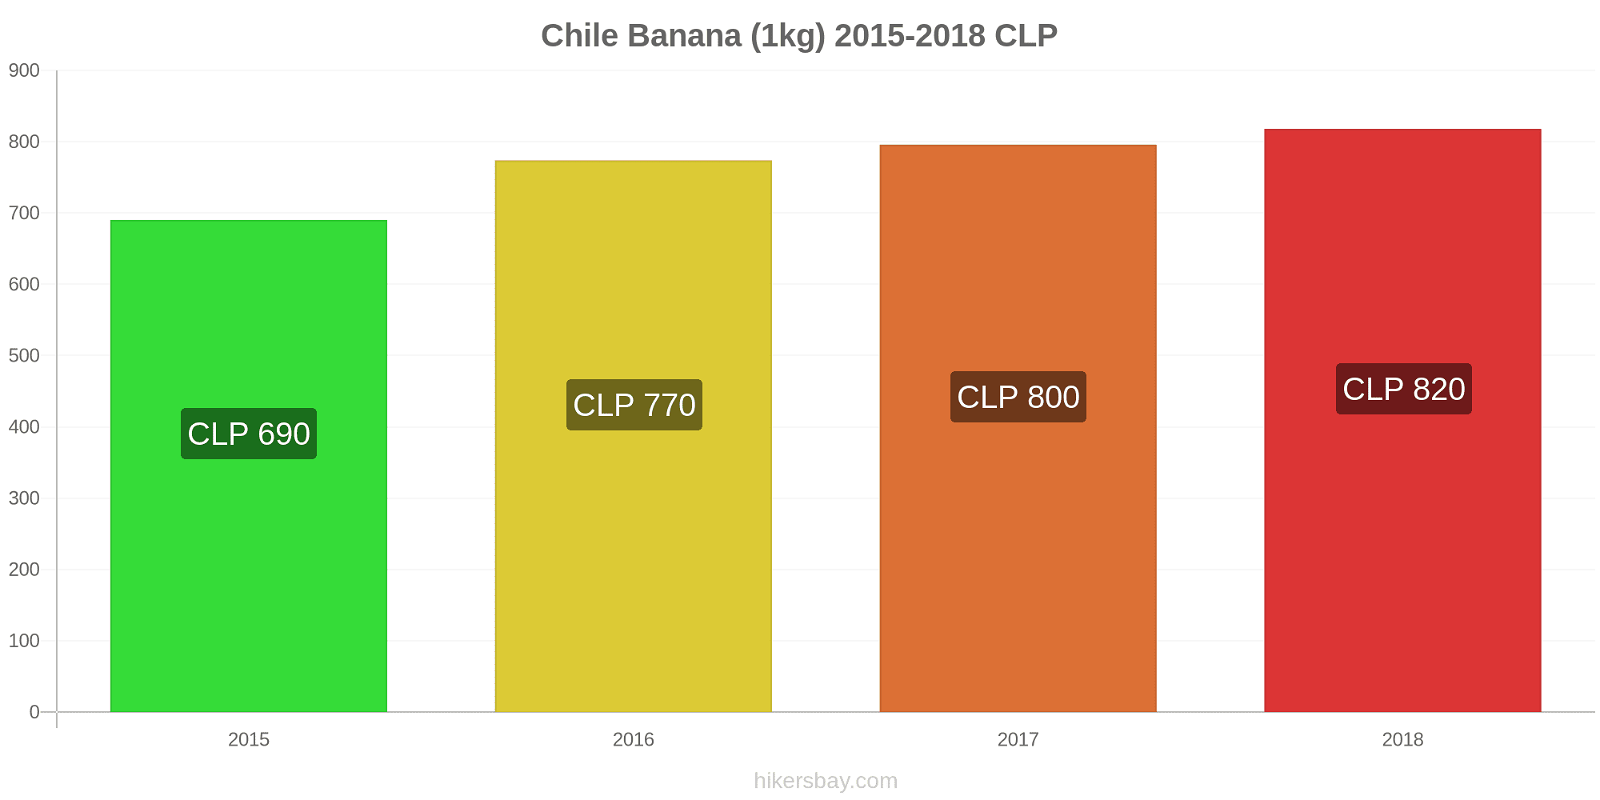 Chile mudanças de preços Bananas (1kg) hikersbay.com